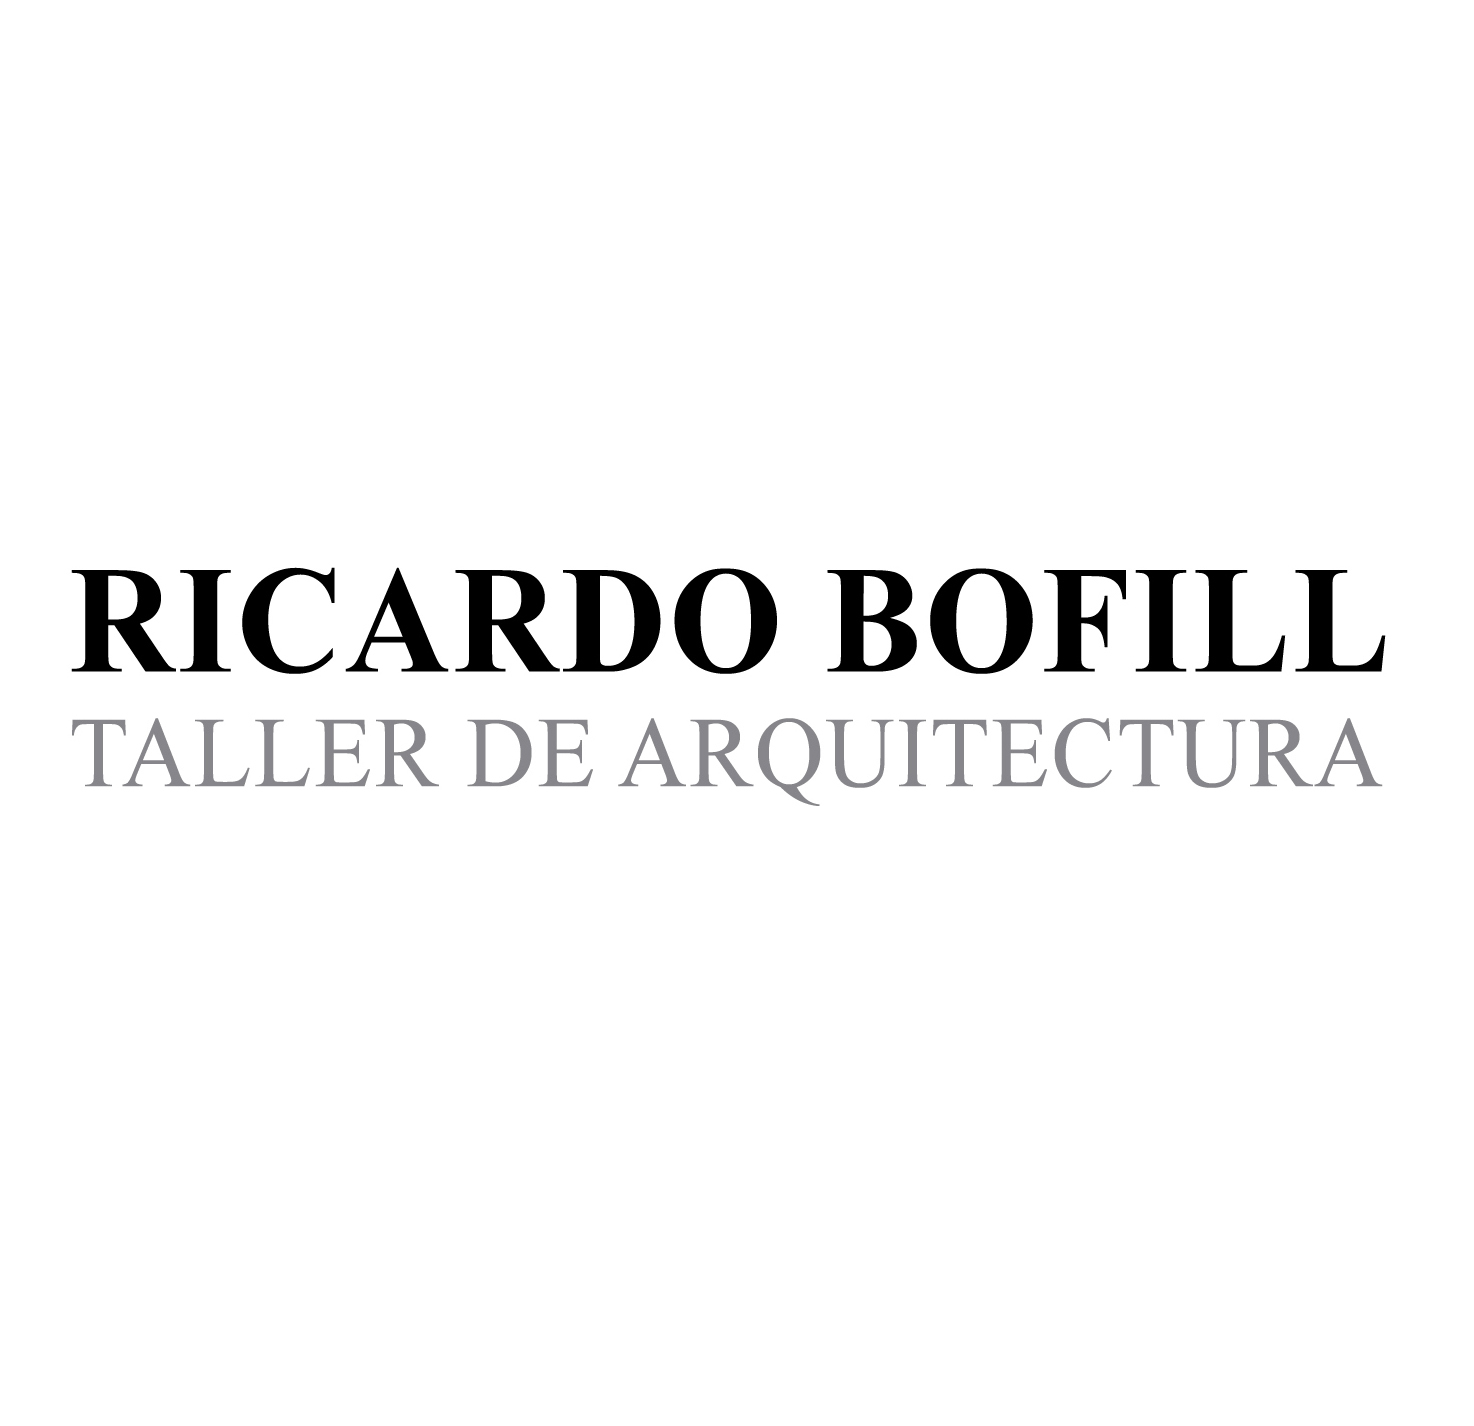 Ricardo Bofill Taller de Arquitectura (RBTA)